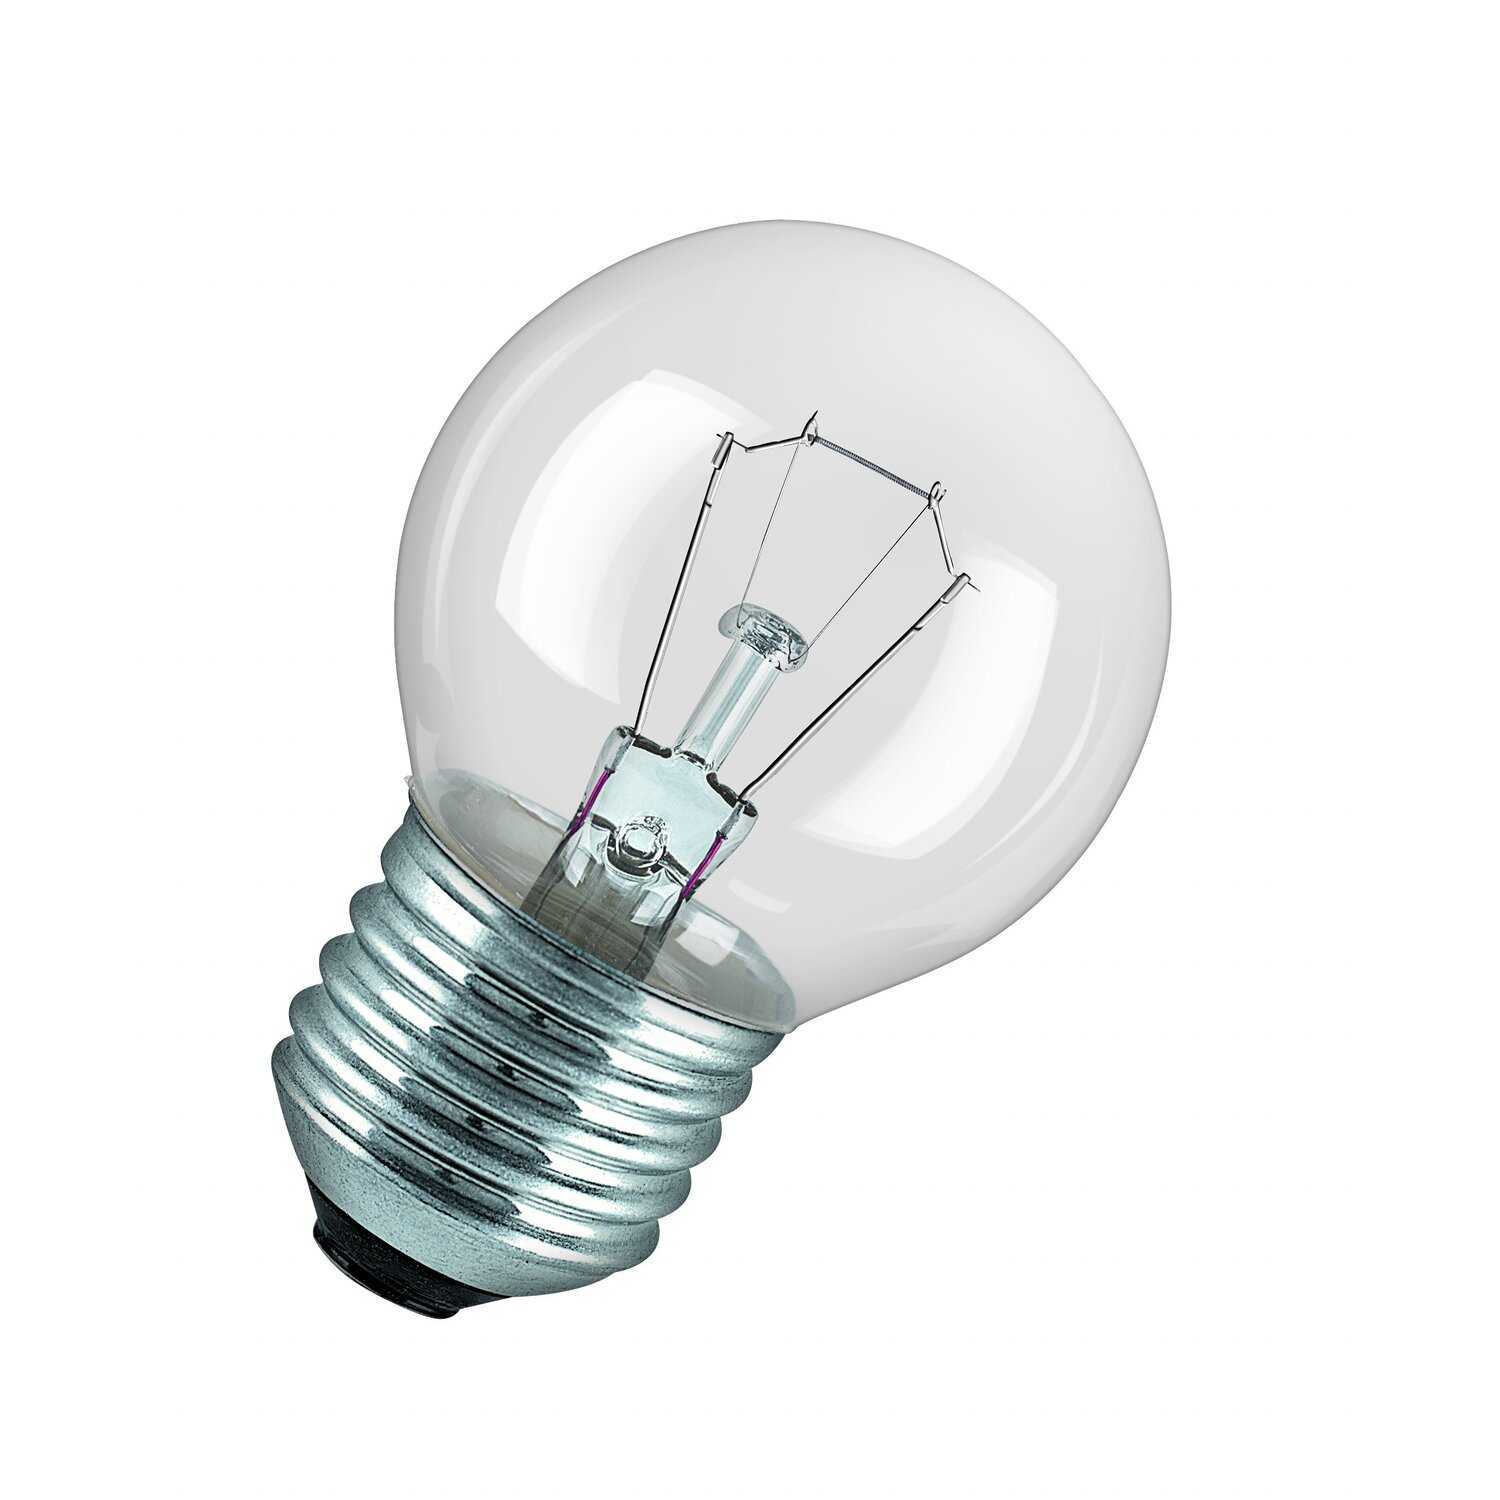 Светодиодные лампы характеристики, конструкция, эффективность, области применения